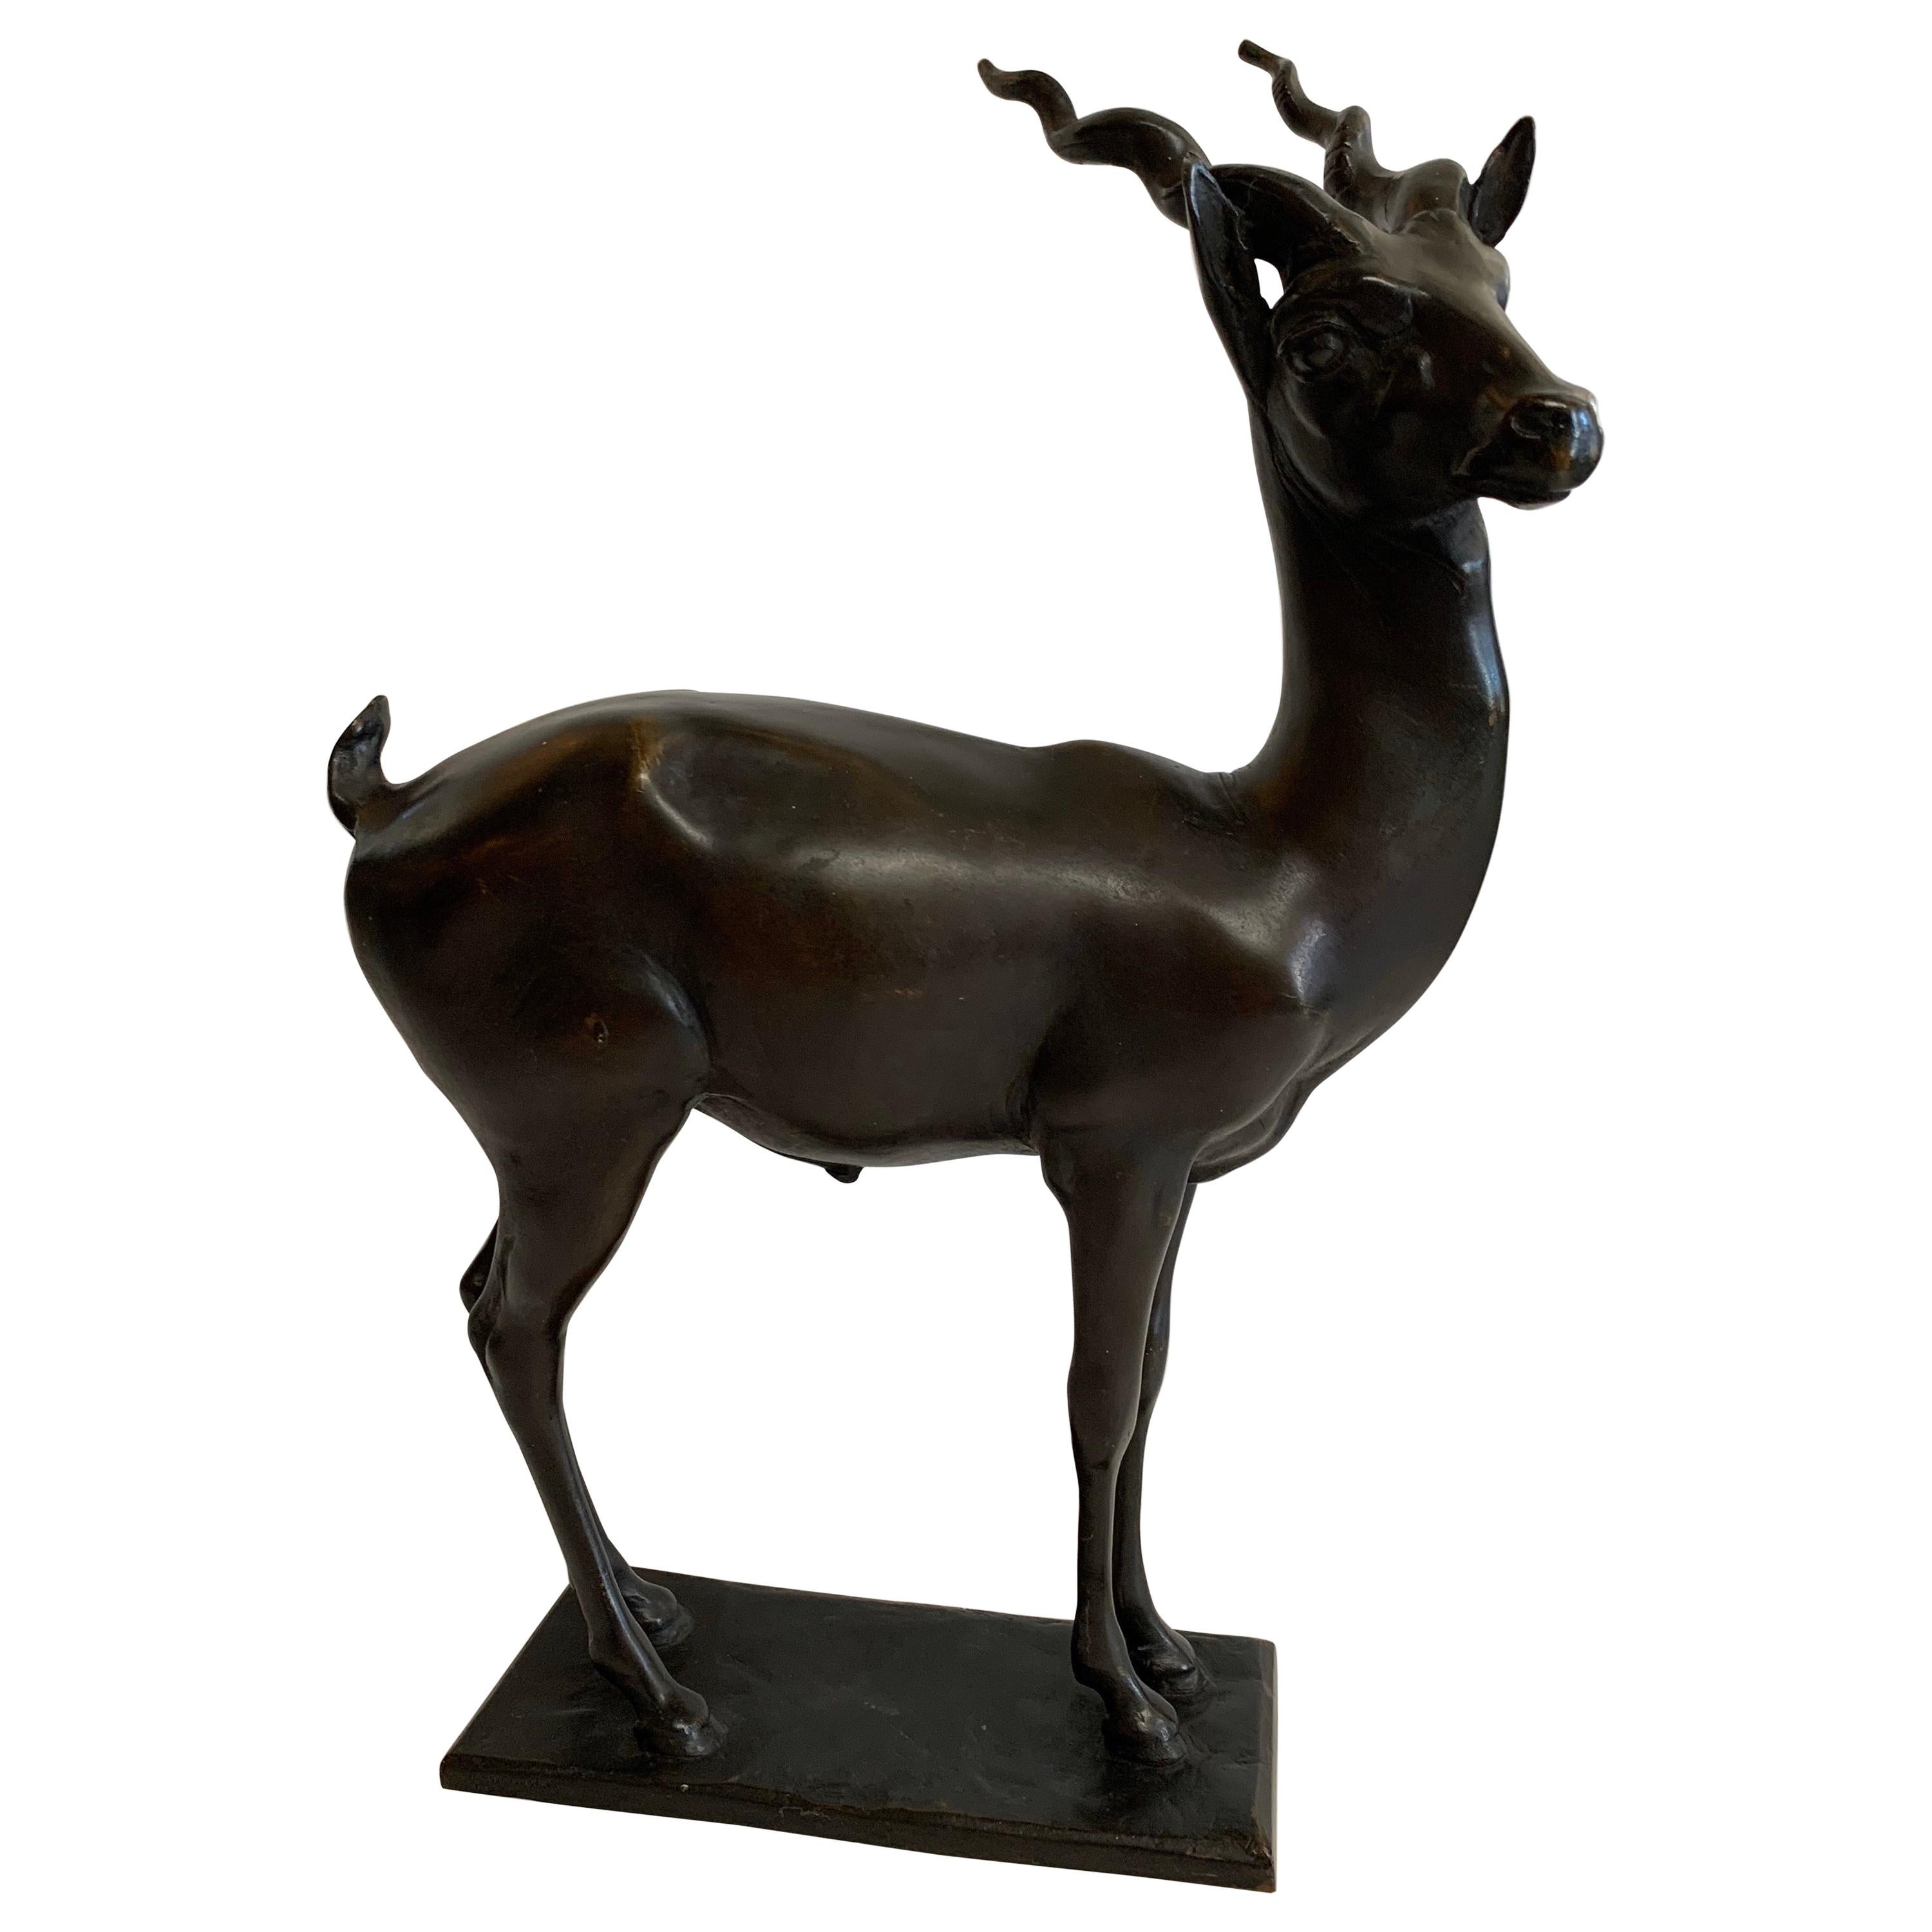 Wunderschöne Bronze Antilope Skulptur signiert Gorham Gründer OGLM auf Basis